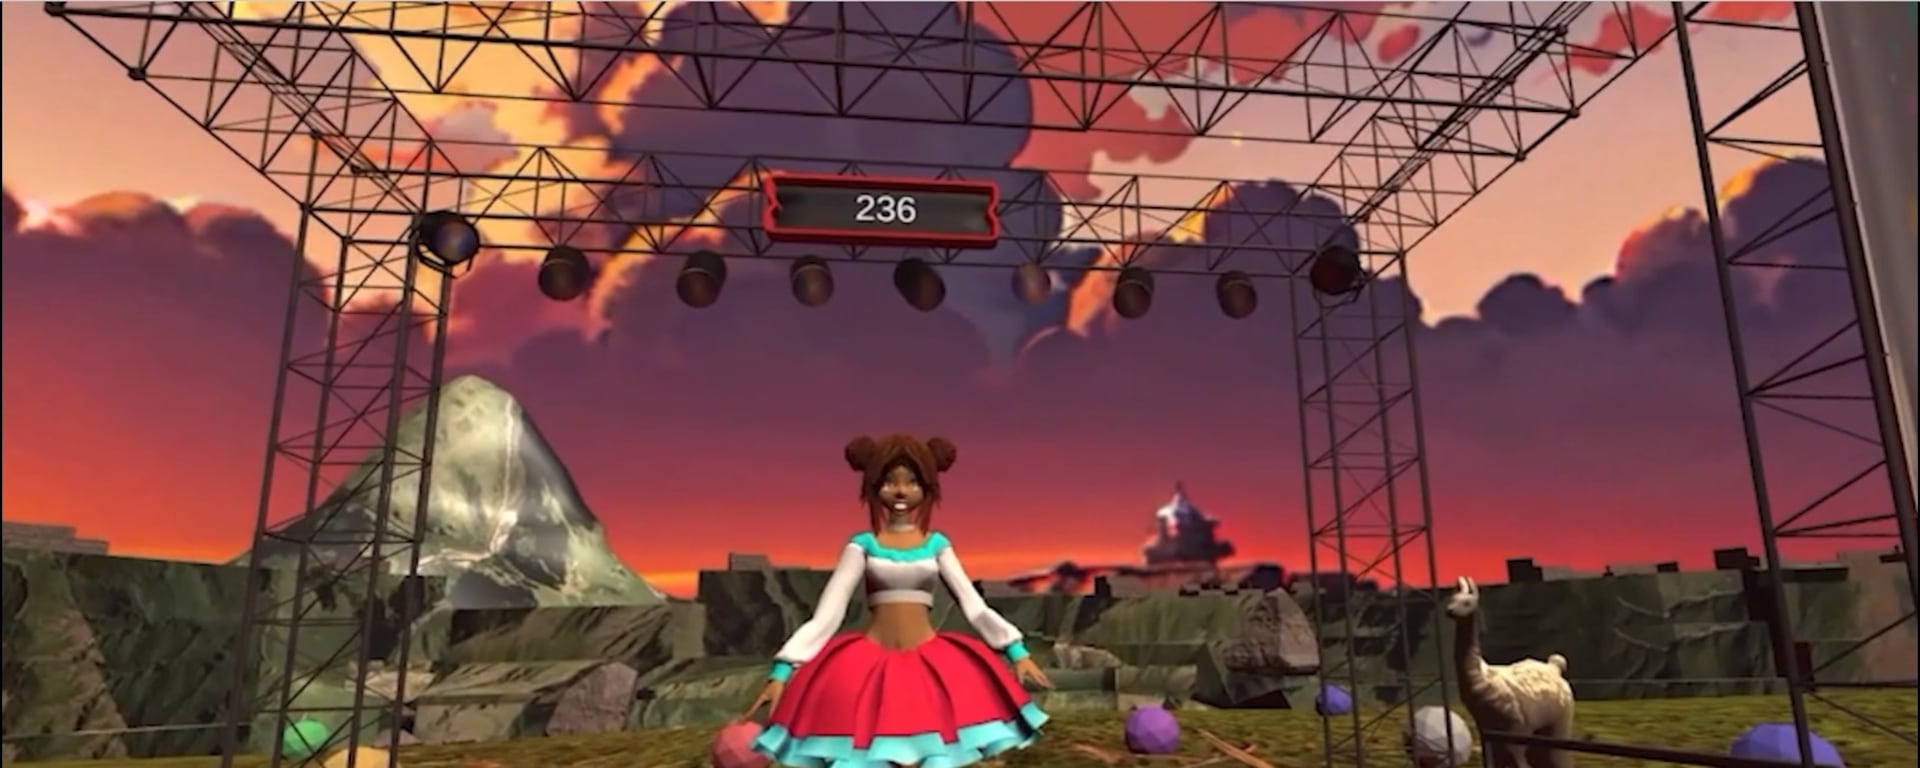 Perú Party: el videojuego de realidad virtual al estilo Just Dance con música y danzas peruanas